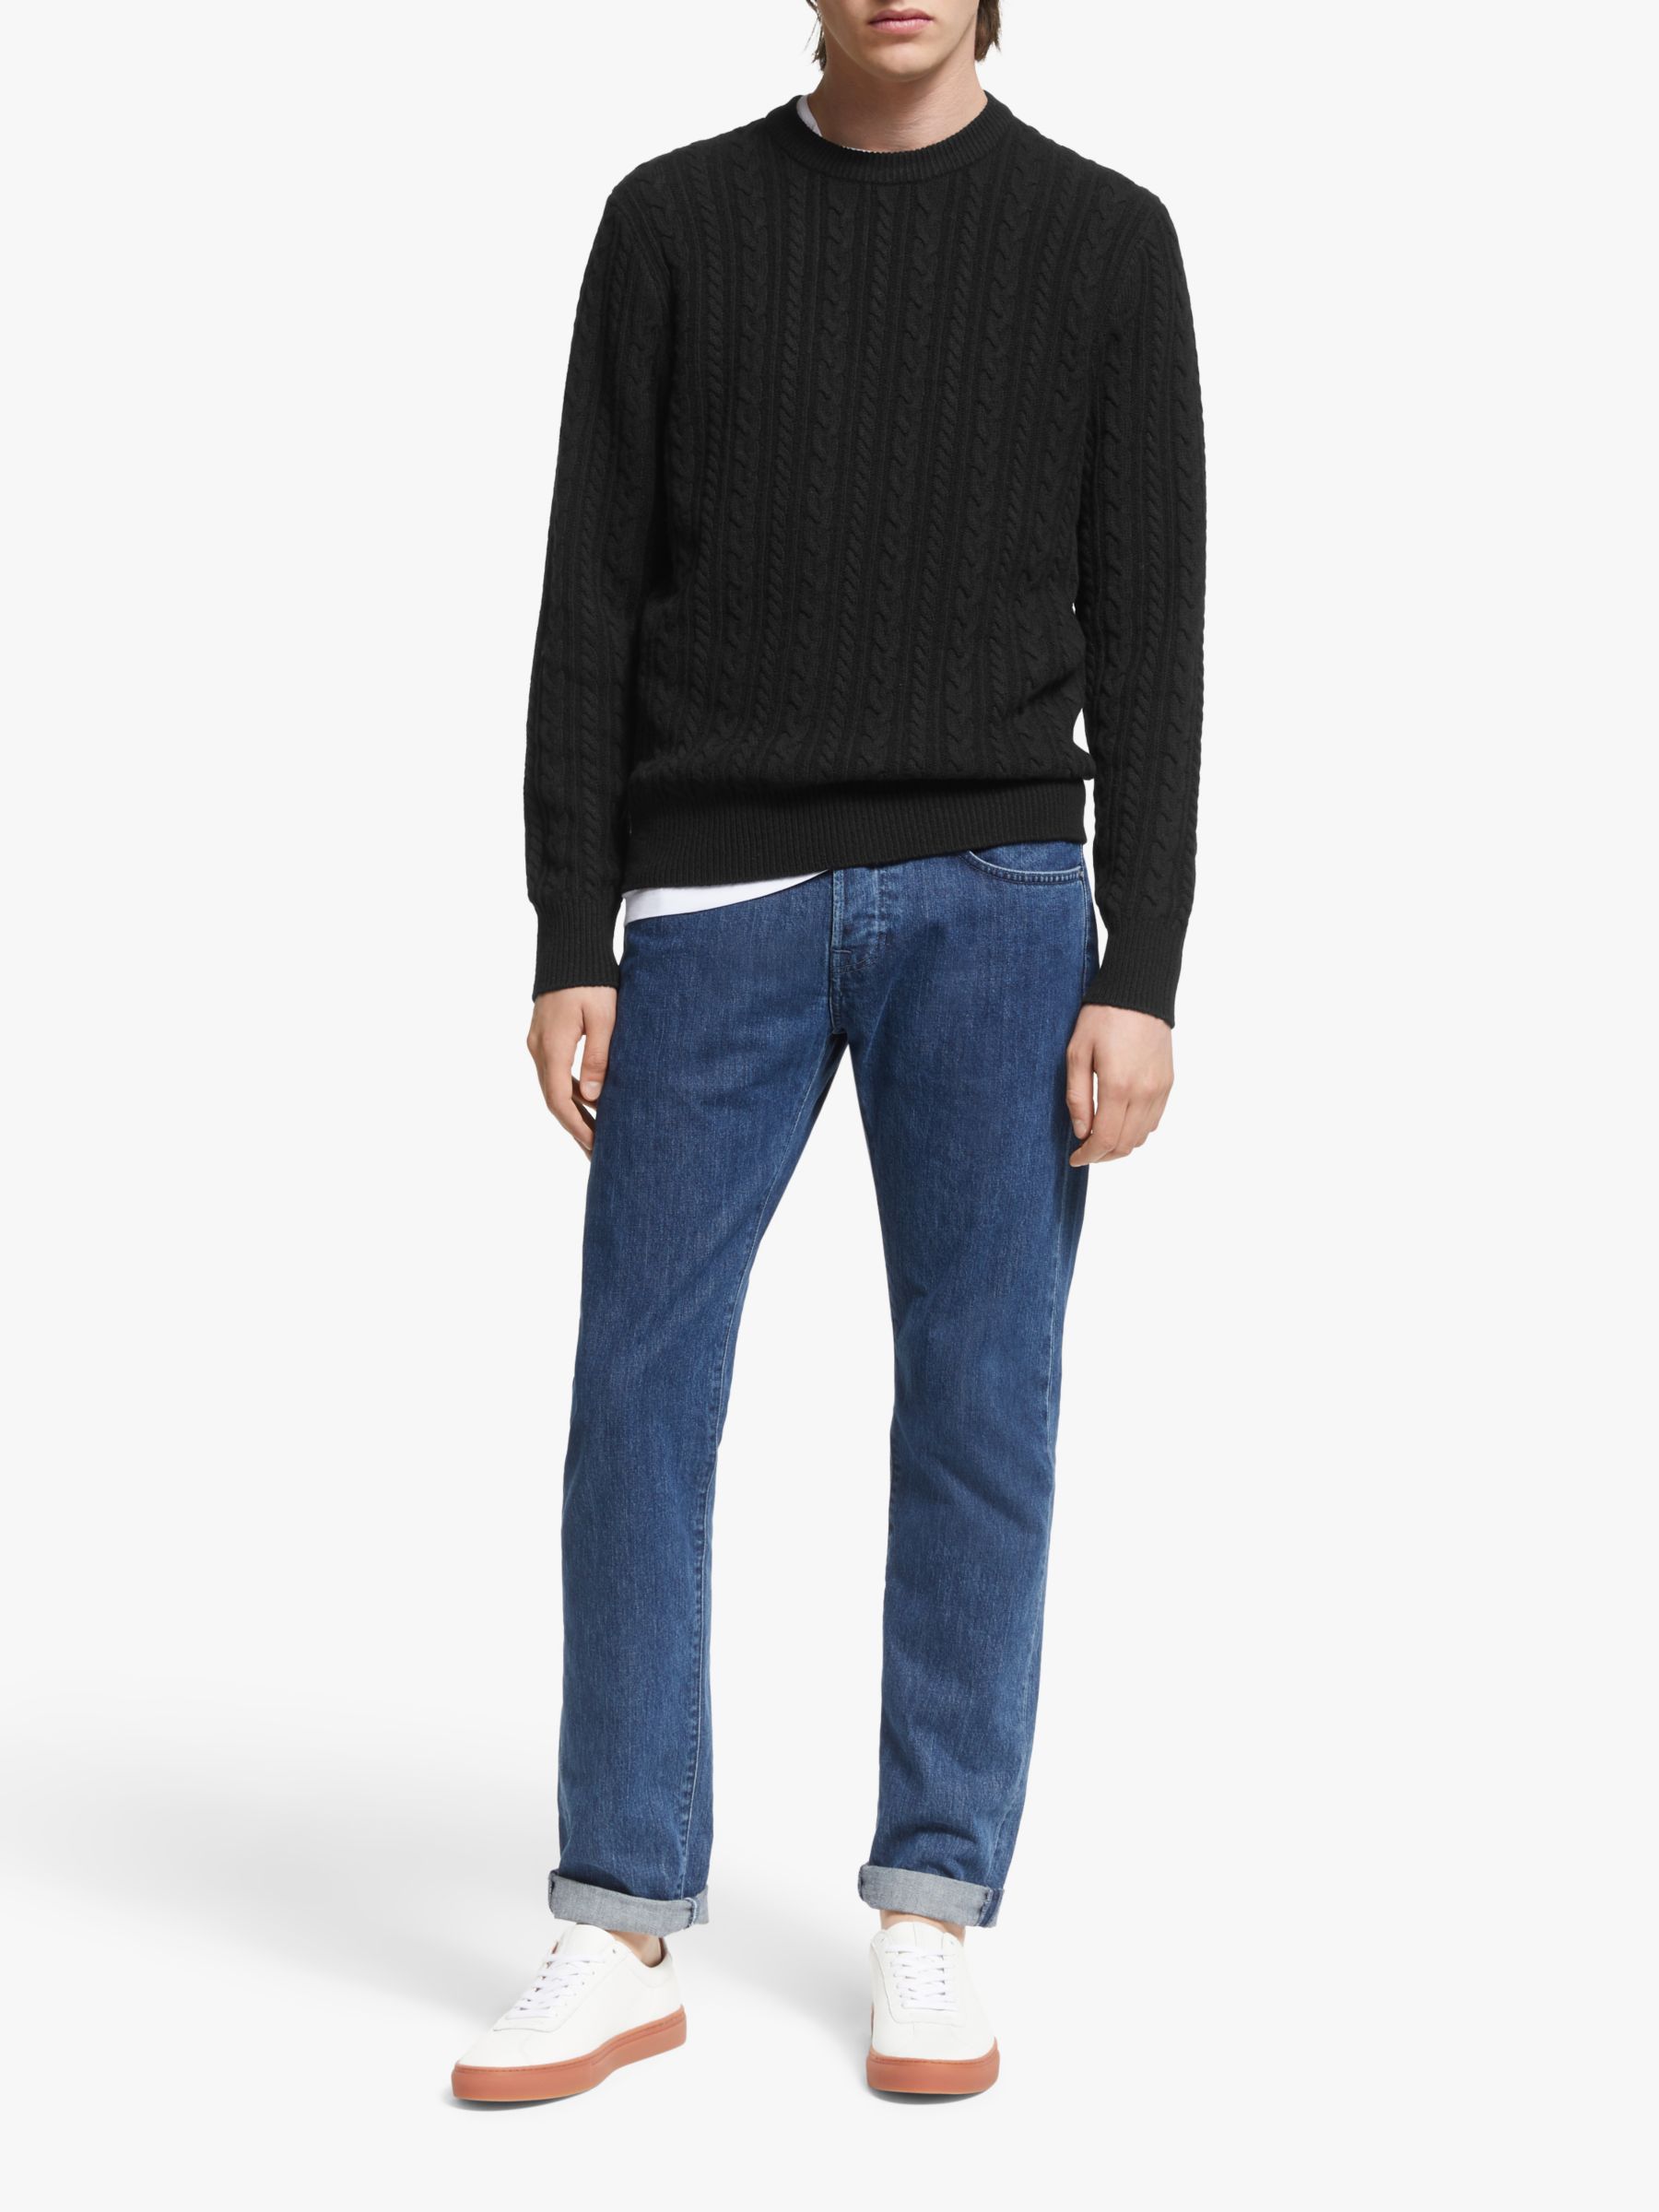 J.Lindeberg Gregor Soft Cable Sweater, Black